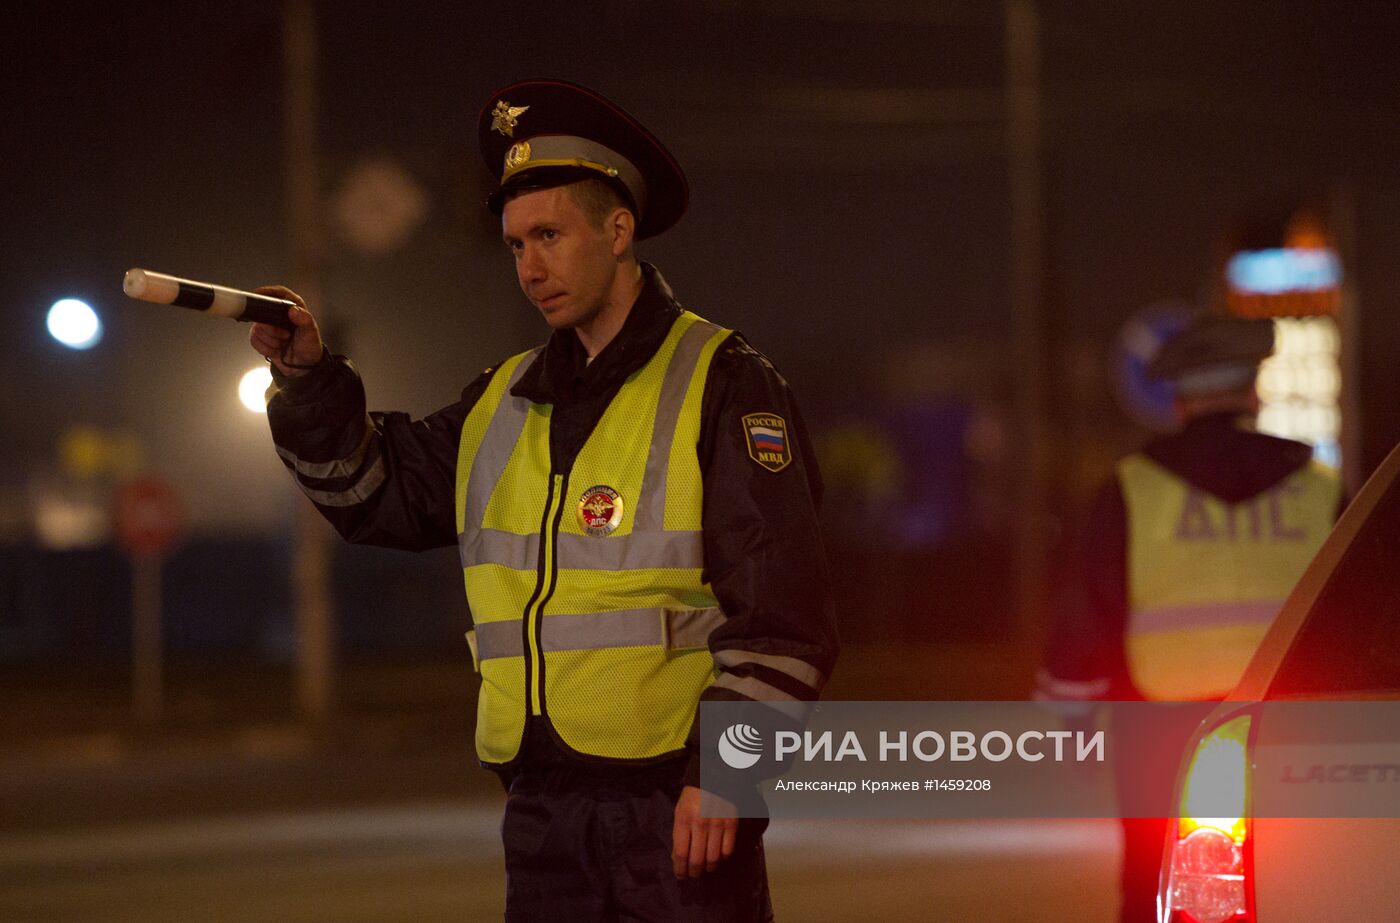 Рейд ГИБДД по выявлению нетрезвых водителей в Новосибирске